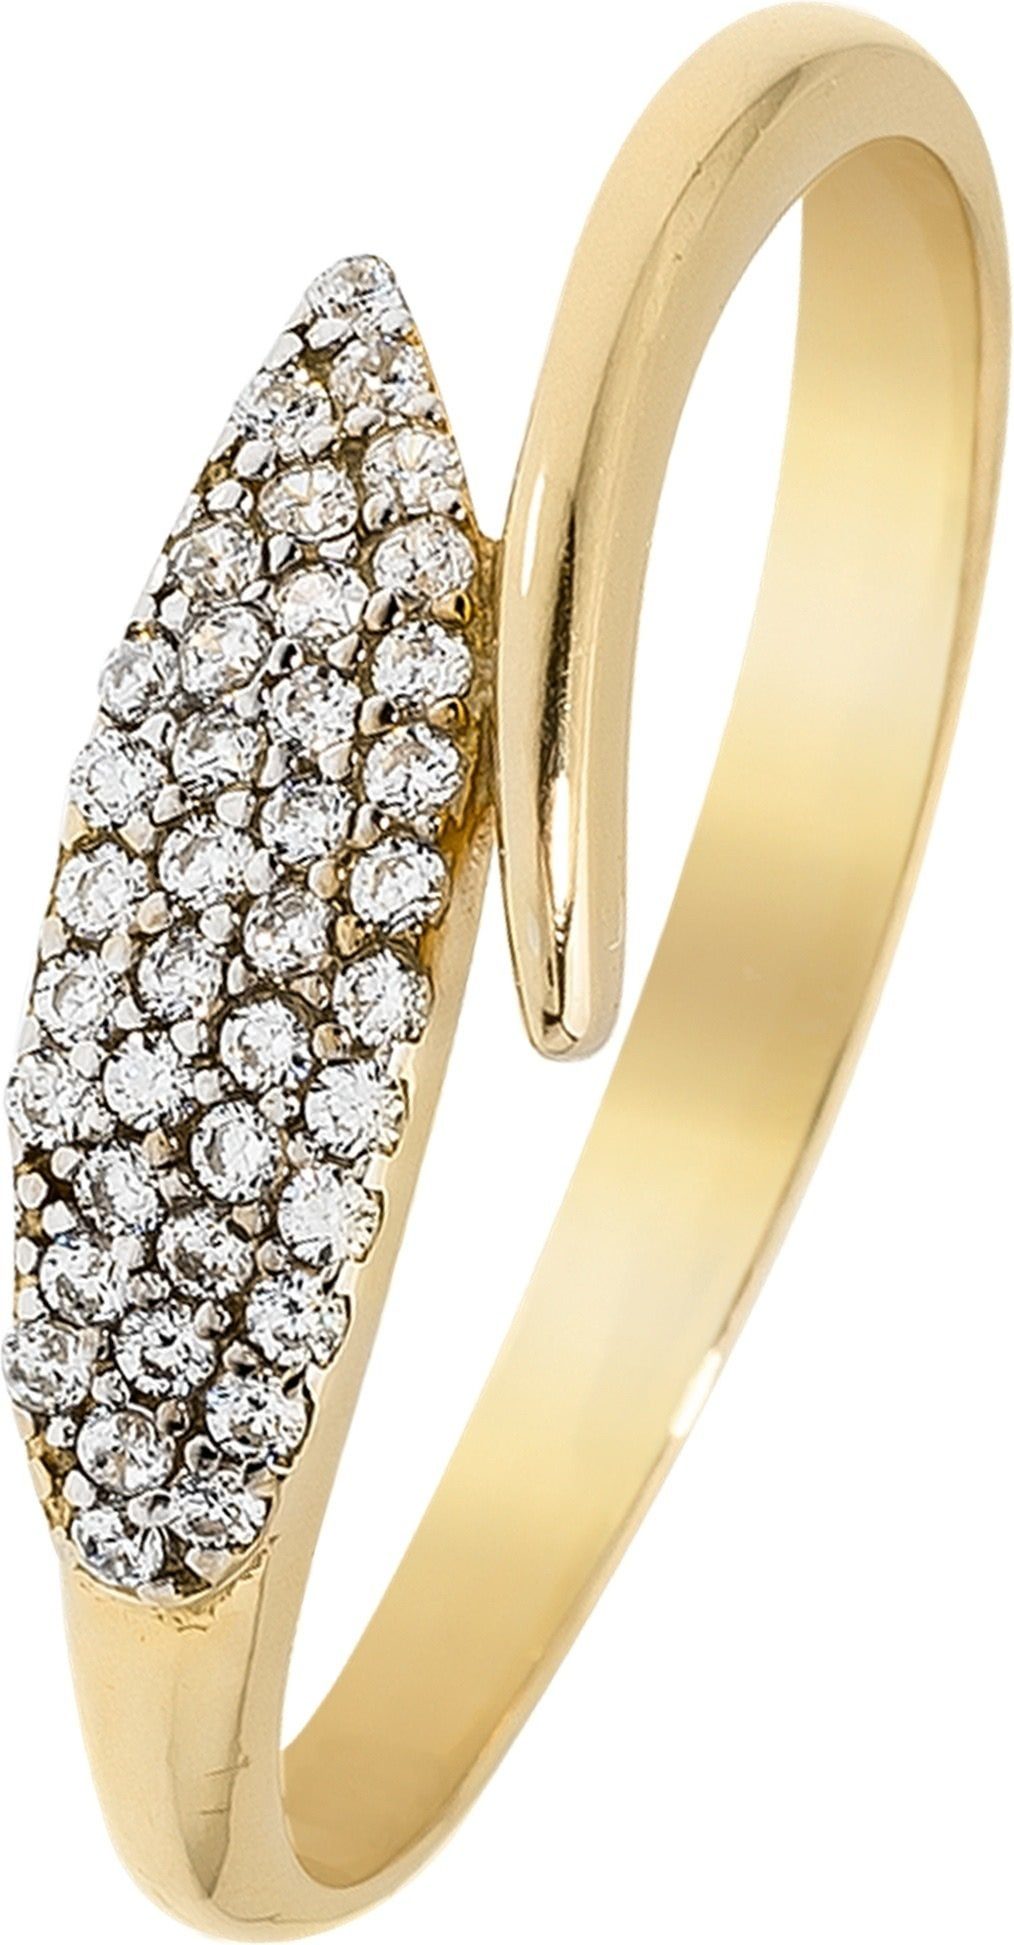 Balia Goldring Balia Ring Blatt für Damen 8K Gold (Fingerring), Fingerring Größe 60 (19,1), 333 Gelbgold - 8 Karat (Blatt gold) Gold 3